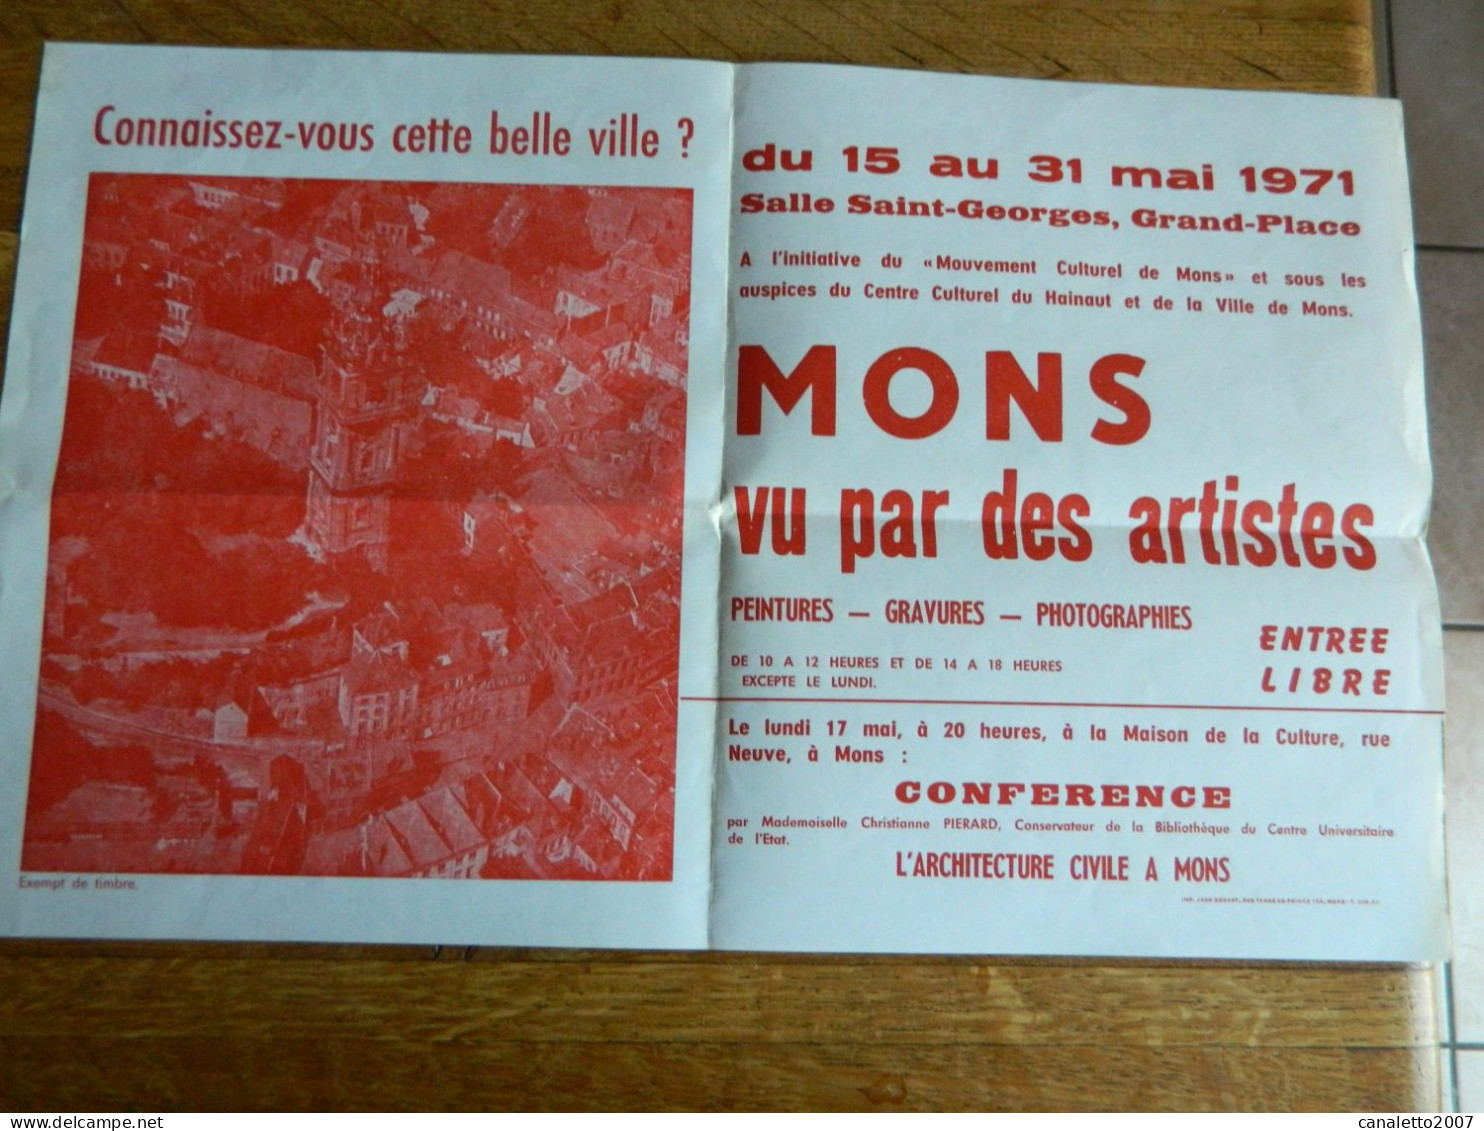 MONS: AFFICHE DE L'EXPOSITION MONS VU PAR DES ARTISTES SALLE ST GEORGES DU 15 AU 31 MAI 1971 - Posters